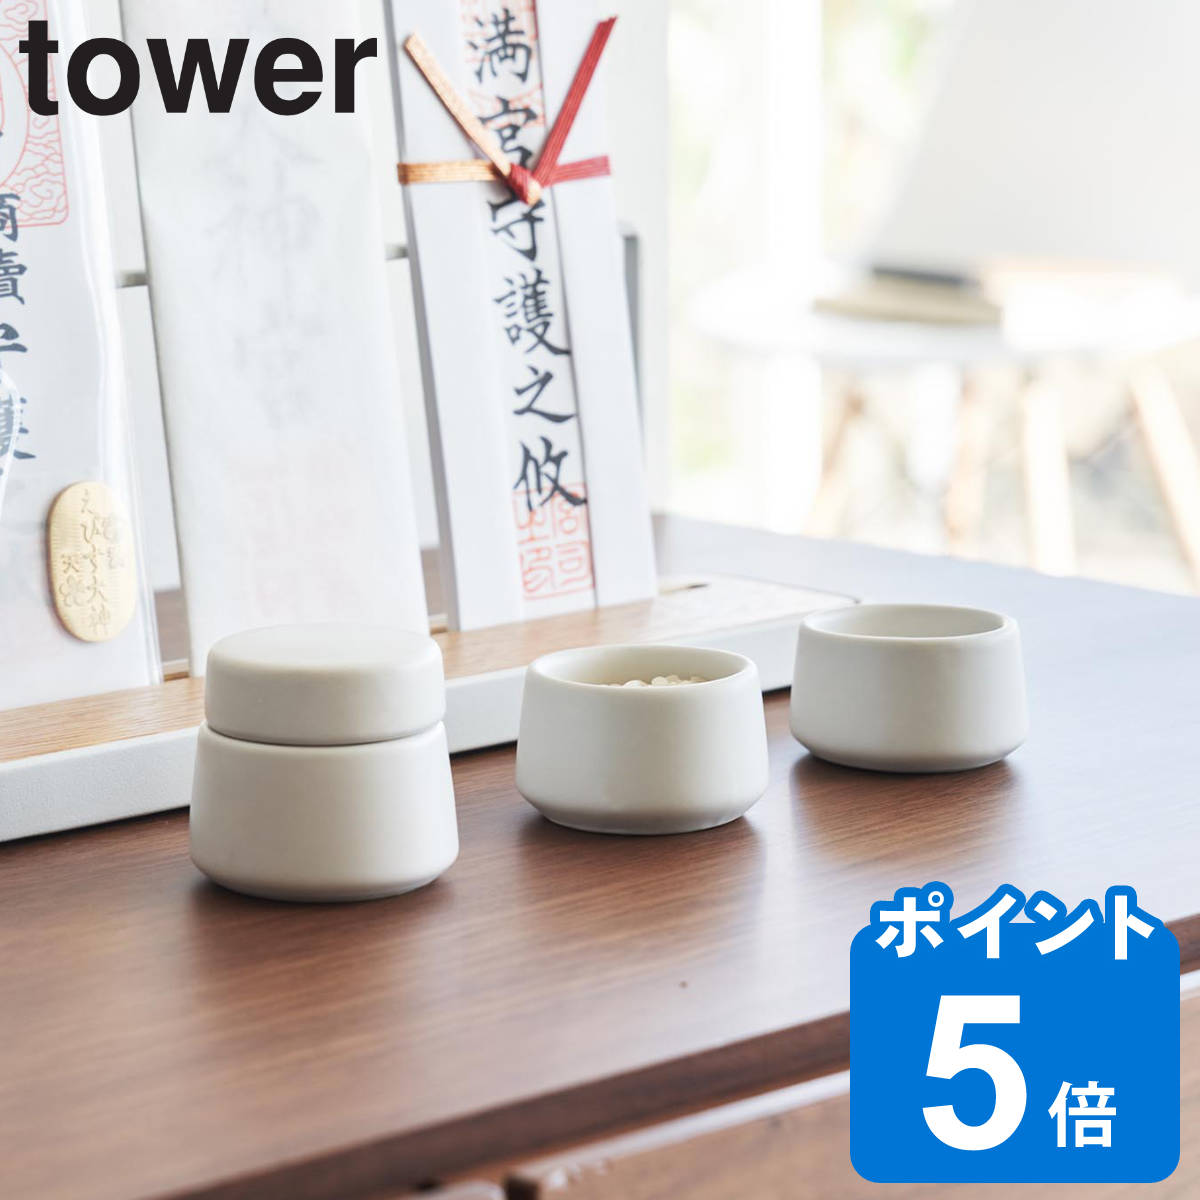 山崎実業 tower 神具 タワー 3点セット ホワイト